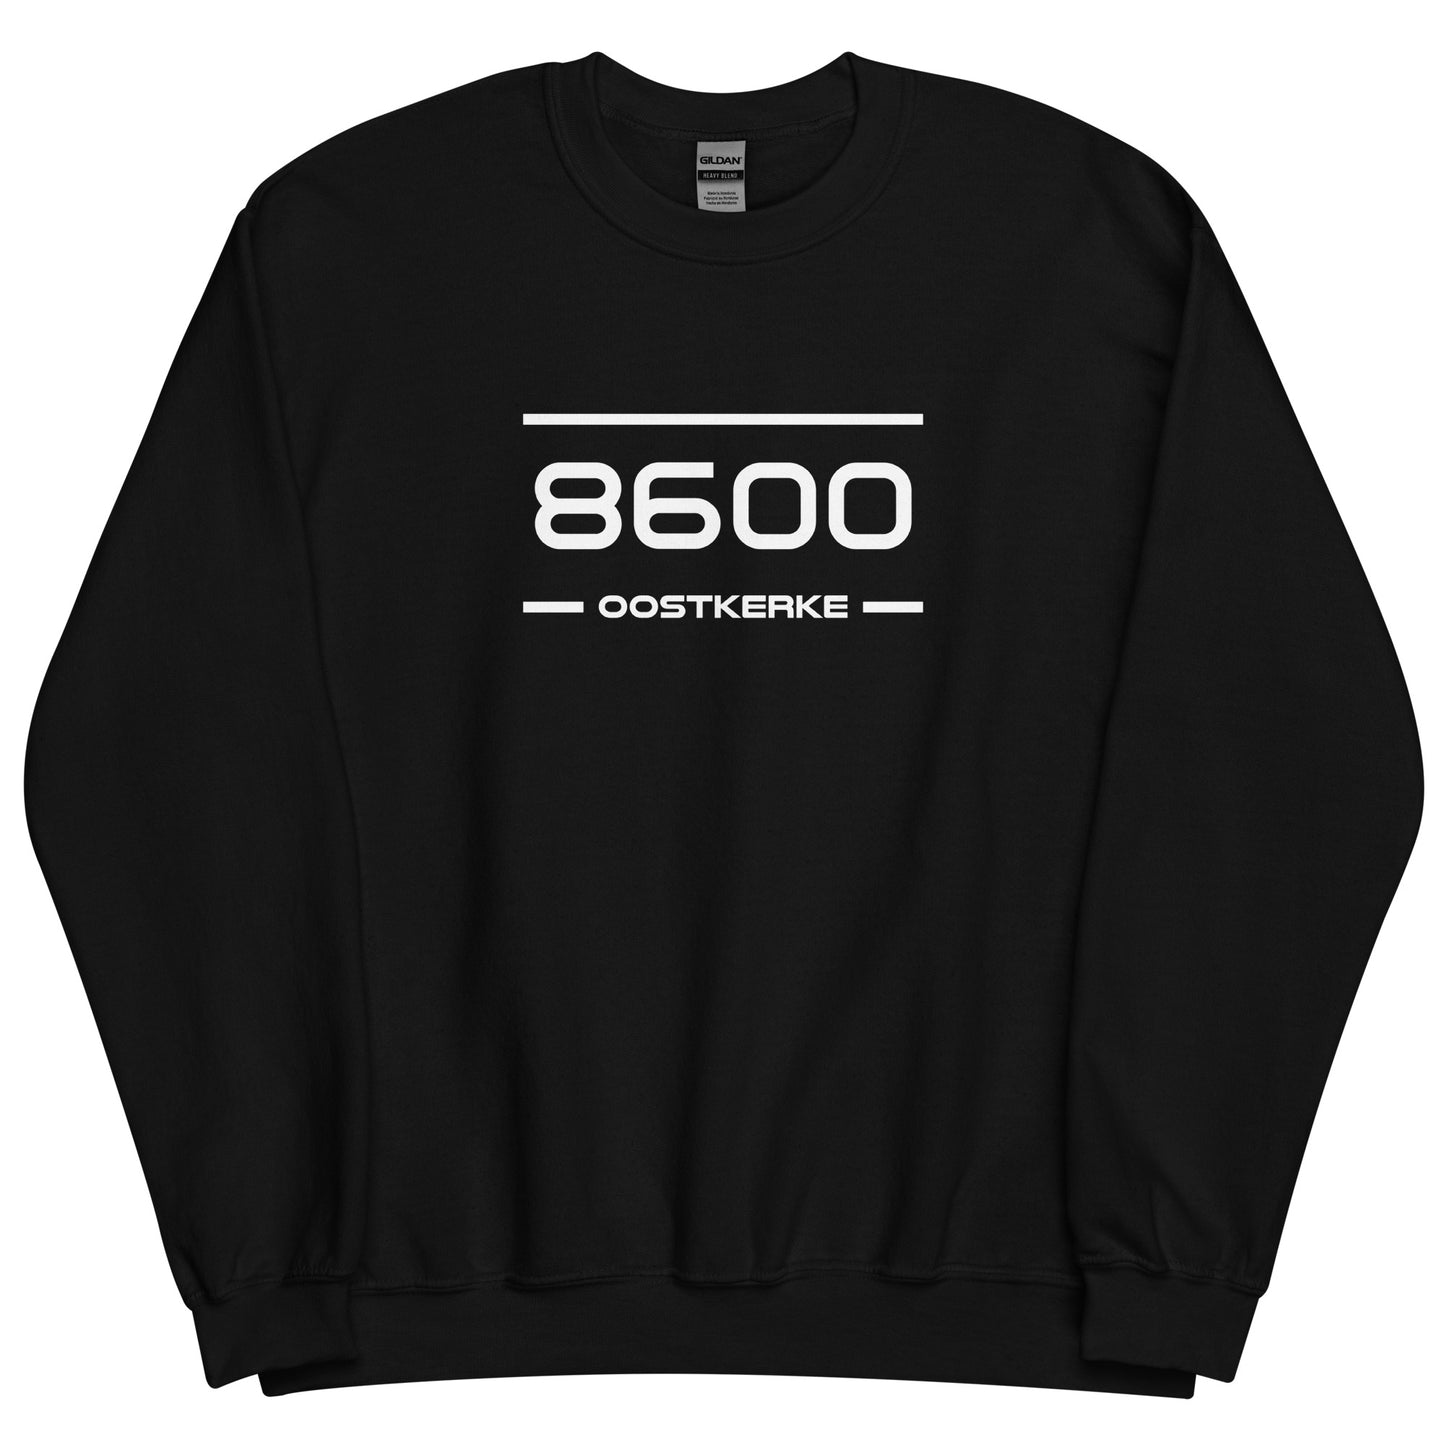 Sweater - 8600 - Oostkerke (M/V)